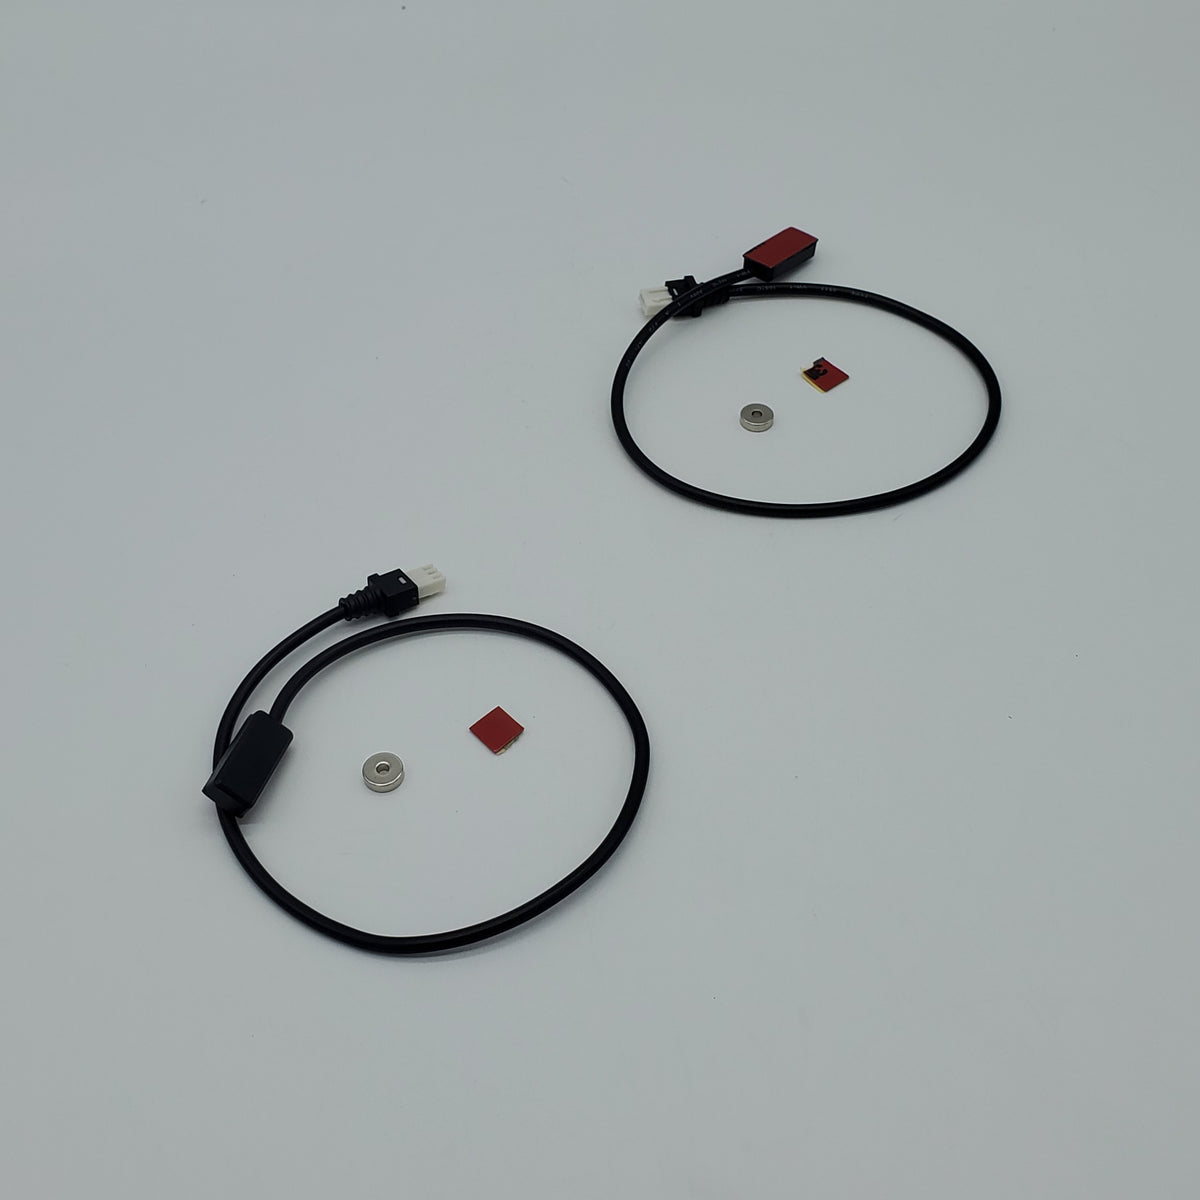 Magnet / E-brake Sensors for TSDZ2 (for VLCD-5 Display Only)